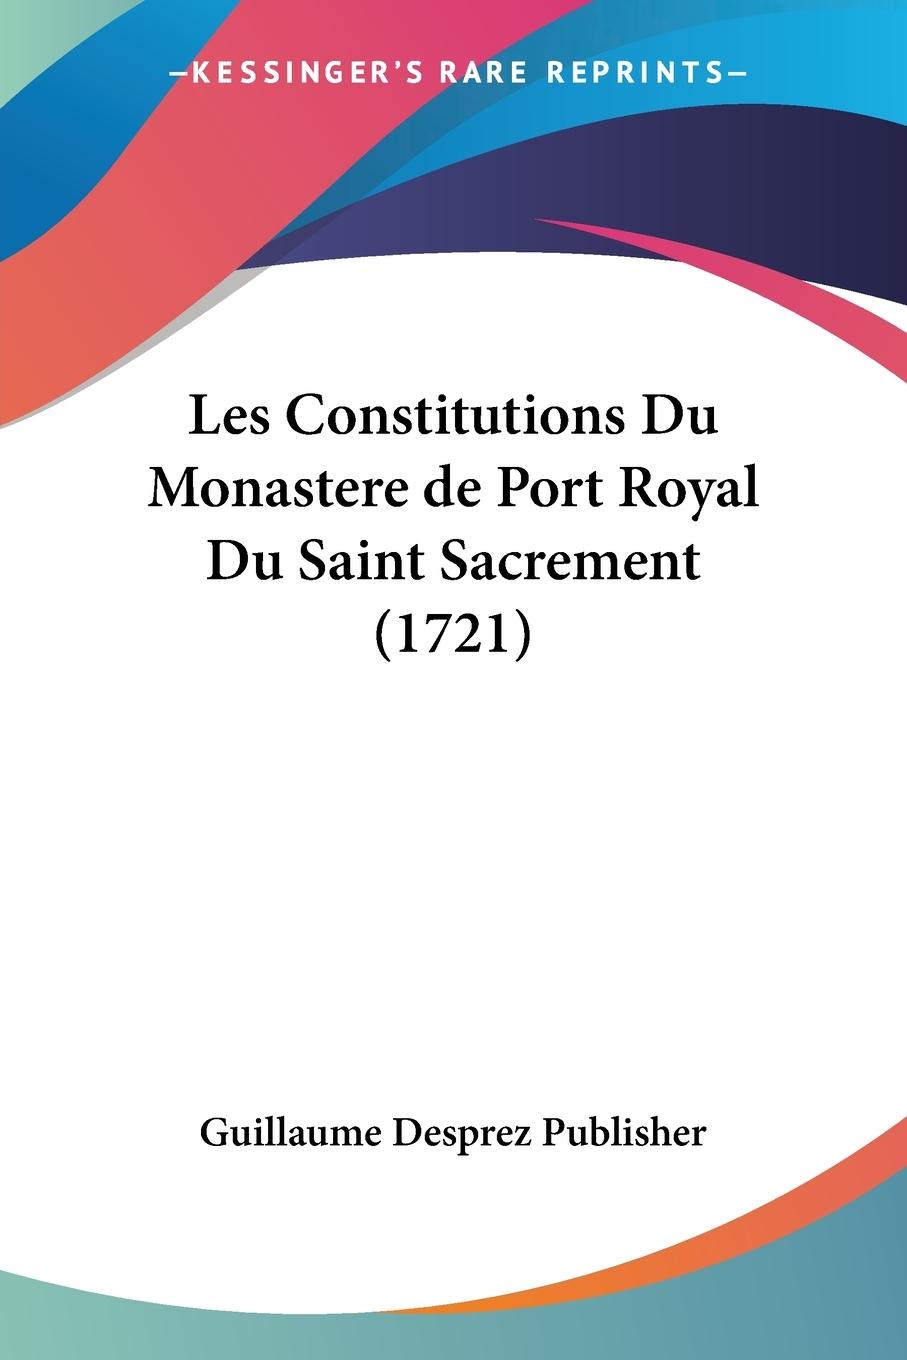 Les Constitutions Du Monastere de Port Royal Du Saint Sacrement (1721) - Guillaume Desprez Publisher